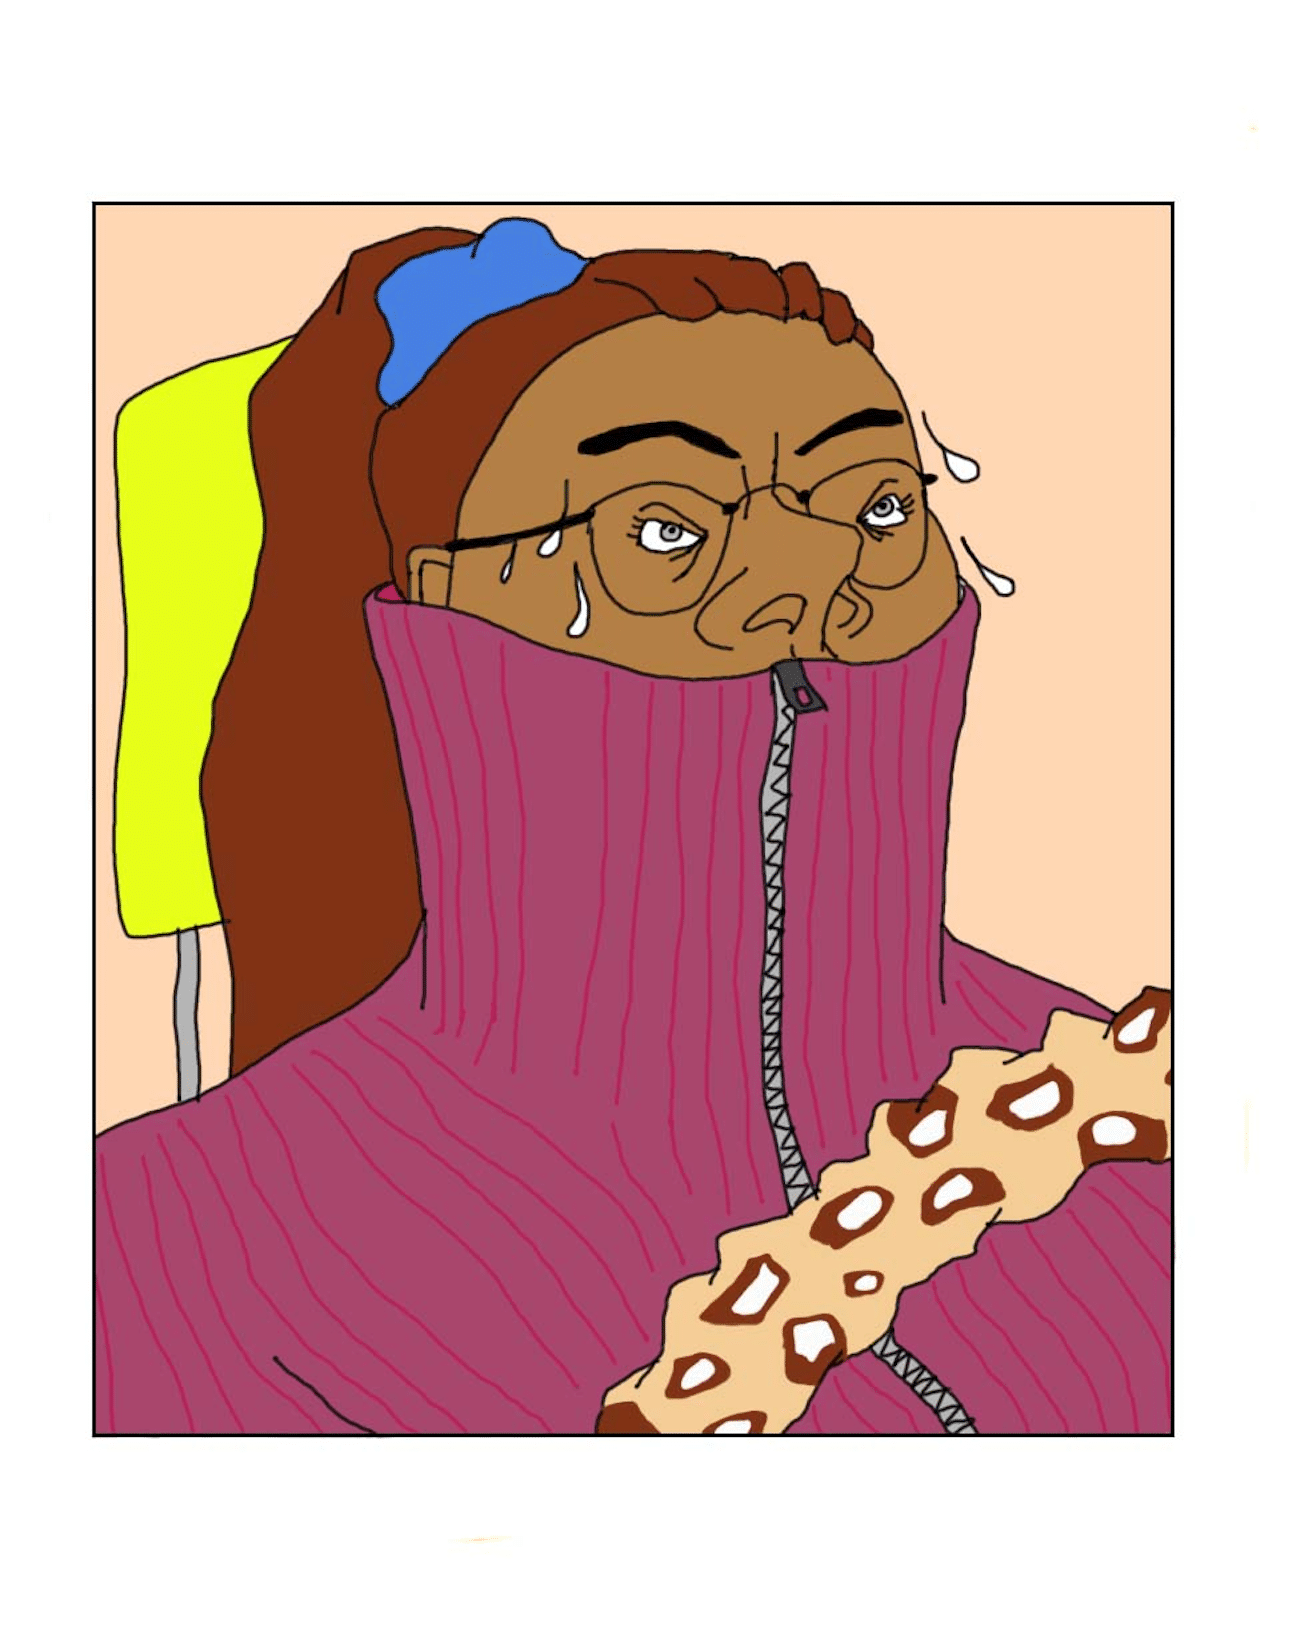 Illustration von johanna ploch zum Fahrschule-Artikel im zeit-magazin, schwitzend-aufgeregte Frau am Steuer